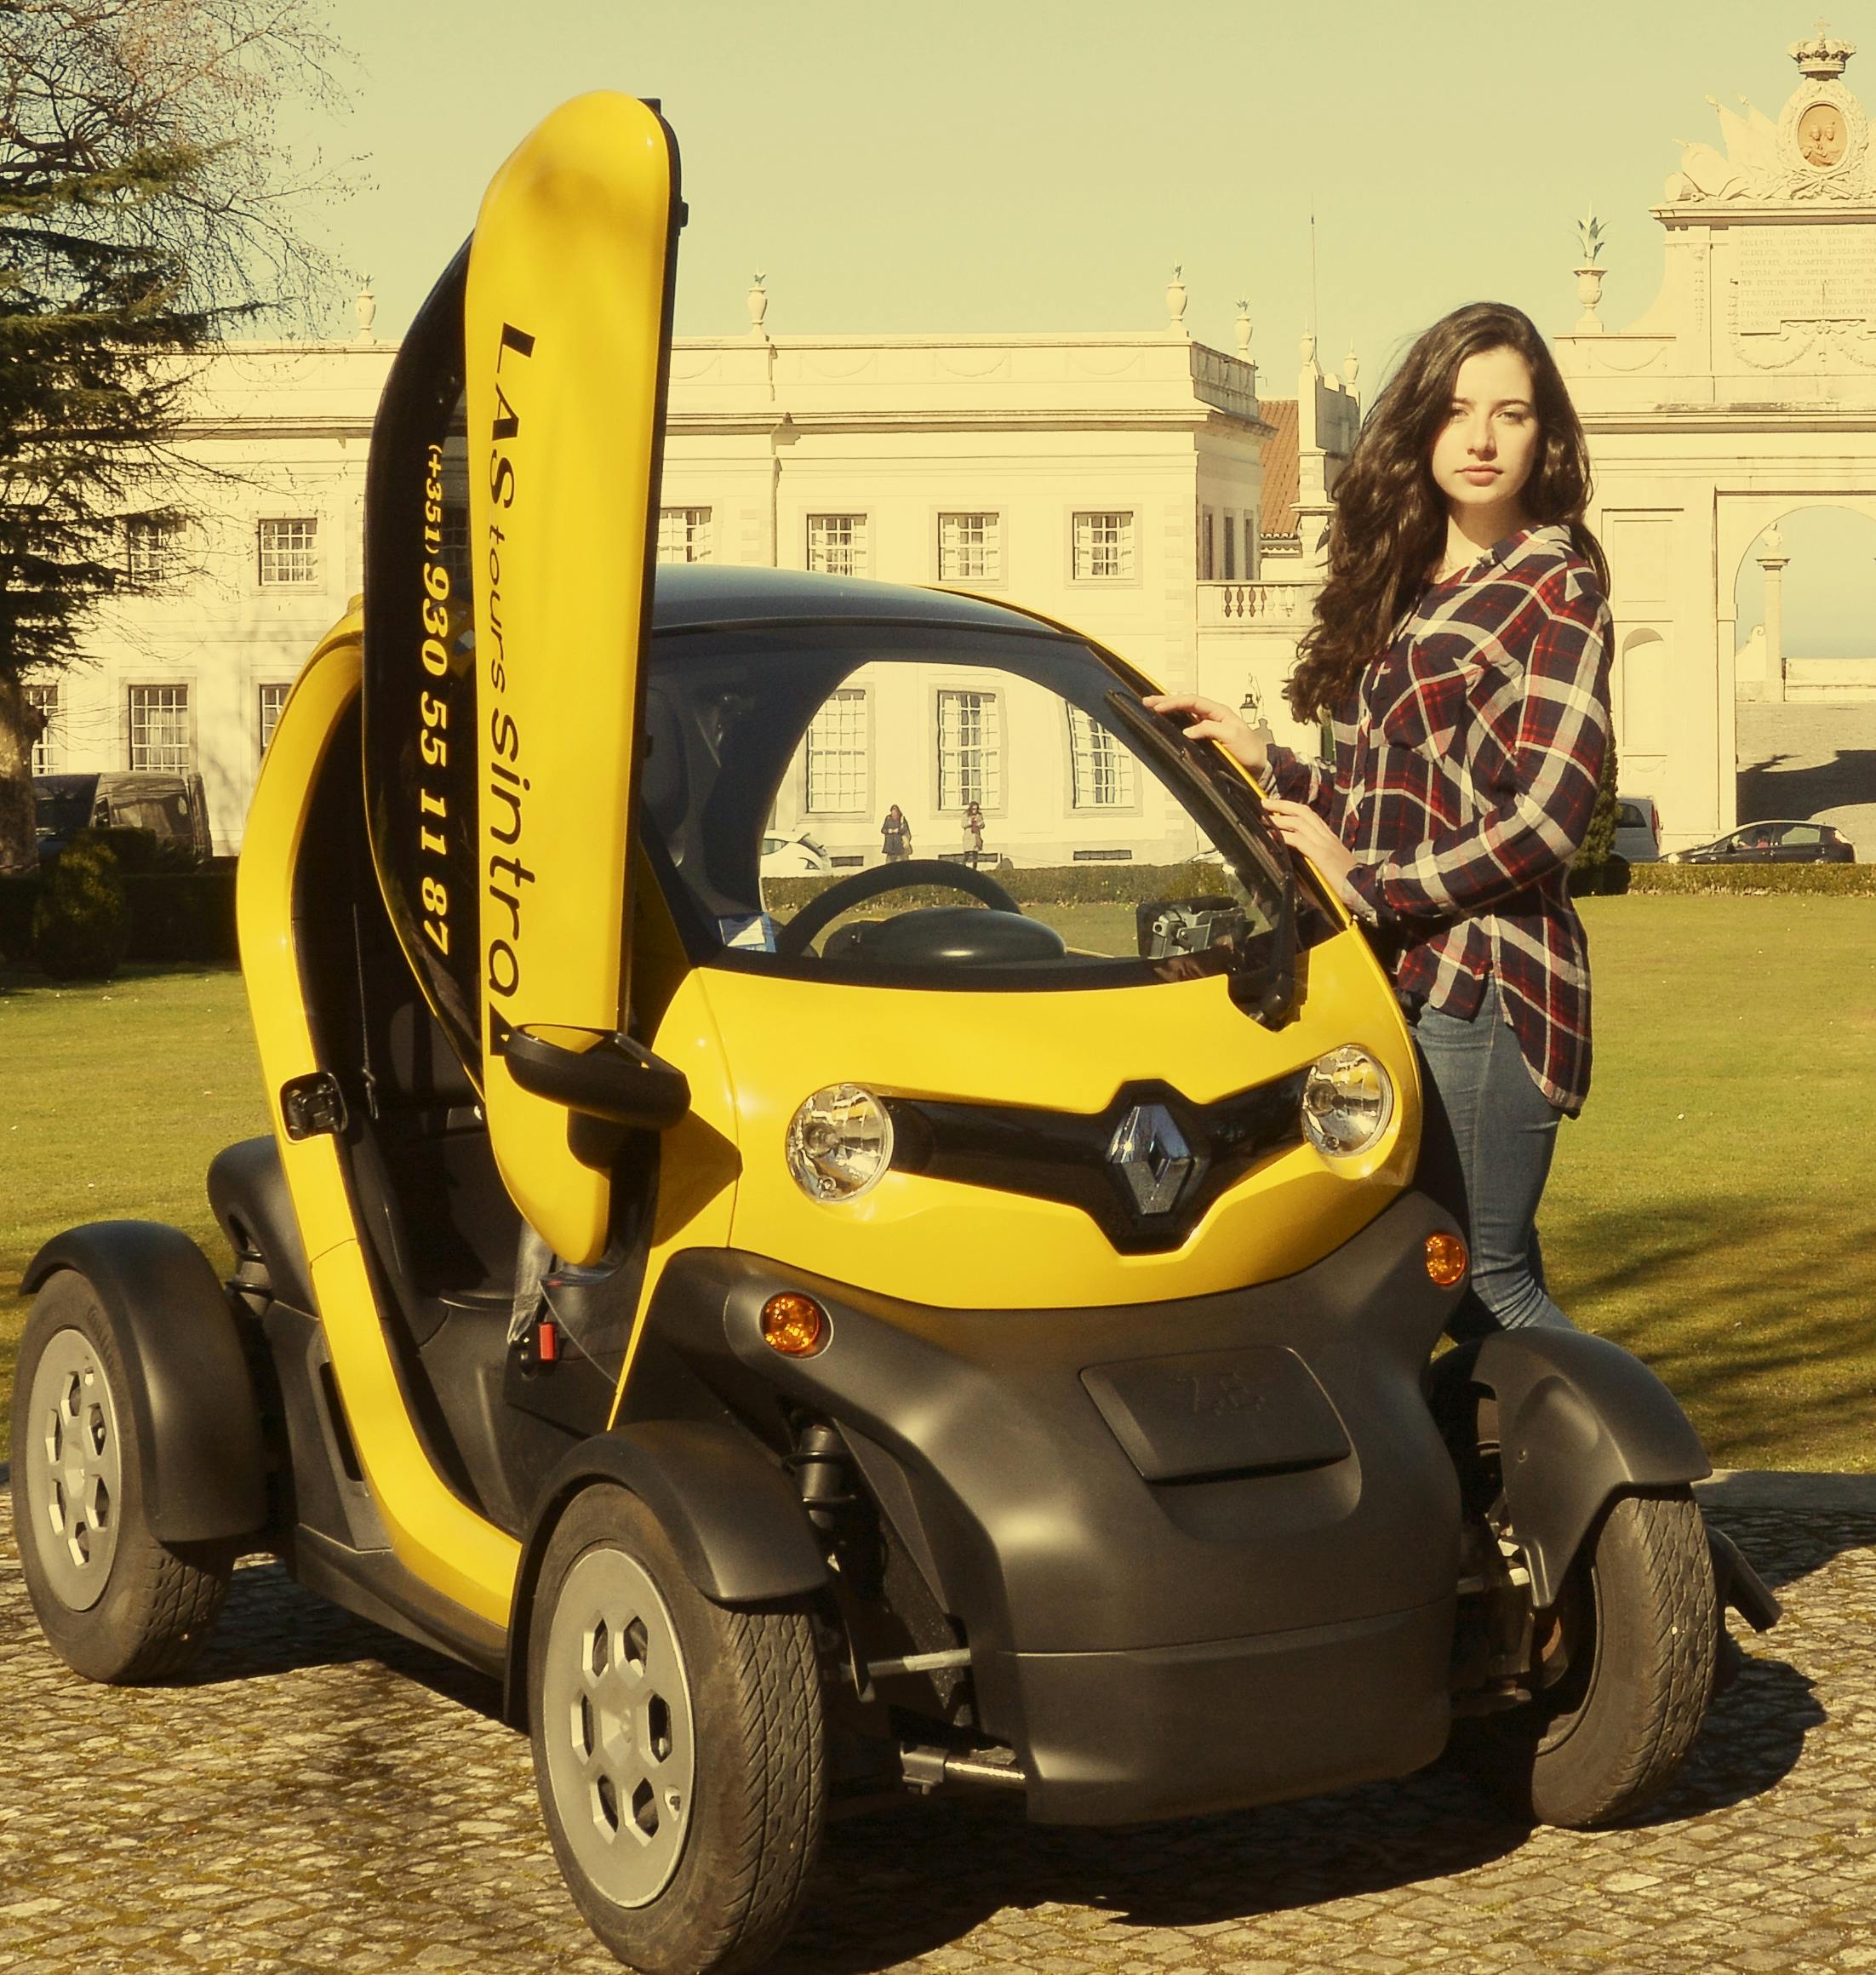 Tour en coche eléctrico por los jardines románticos de Sintra